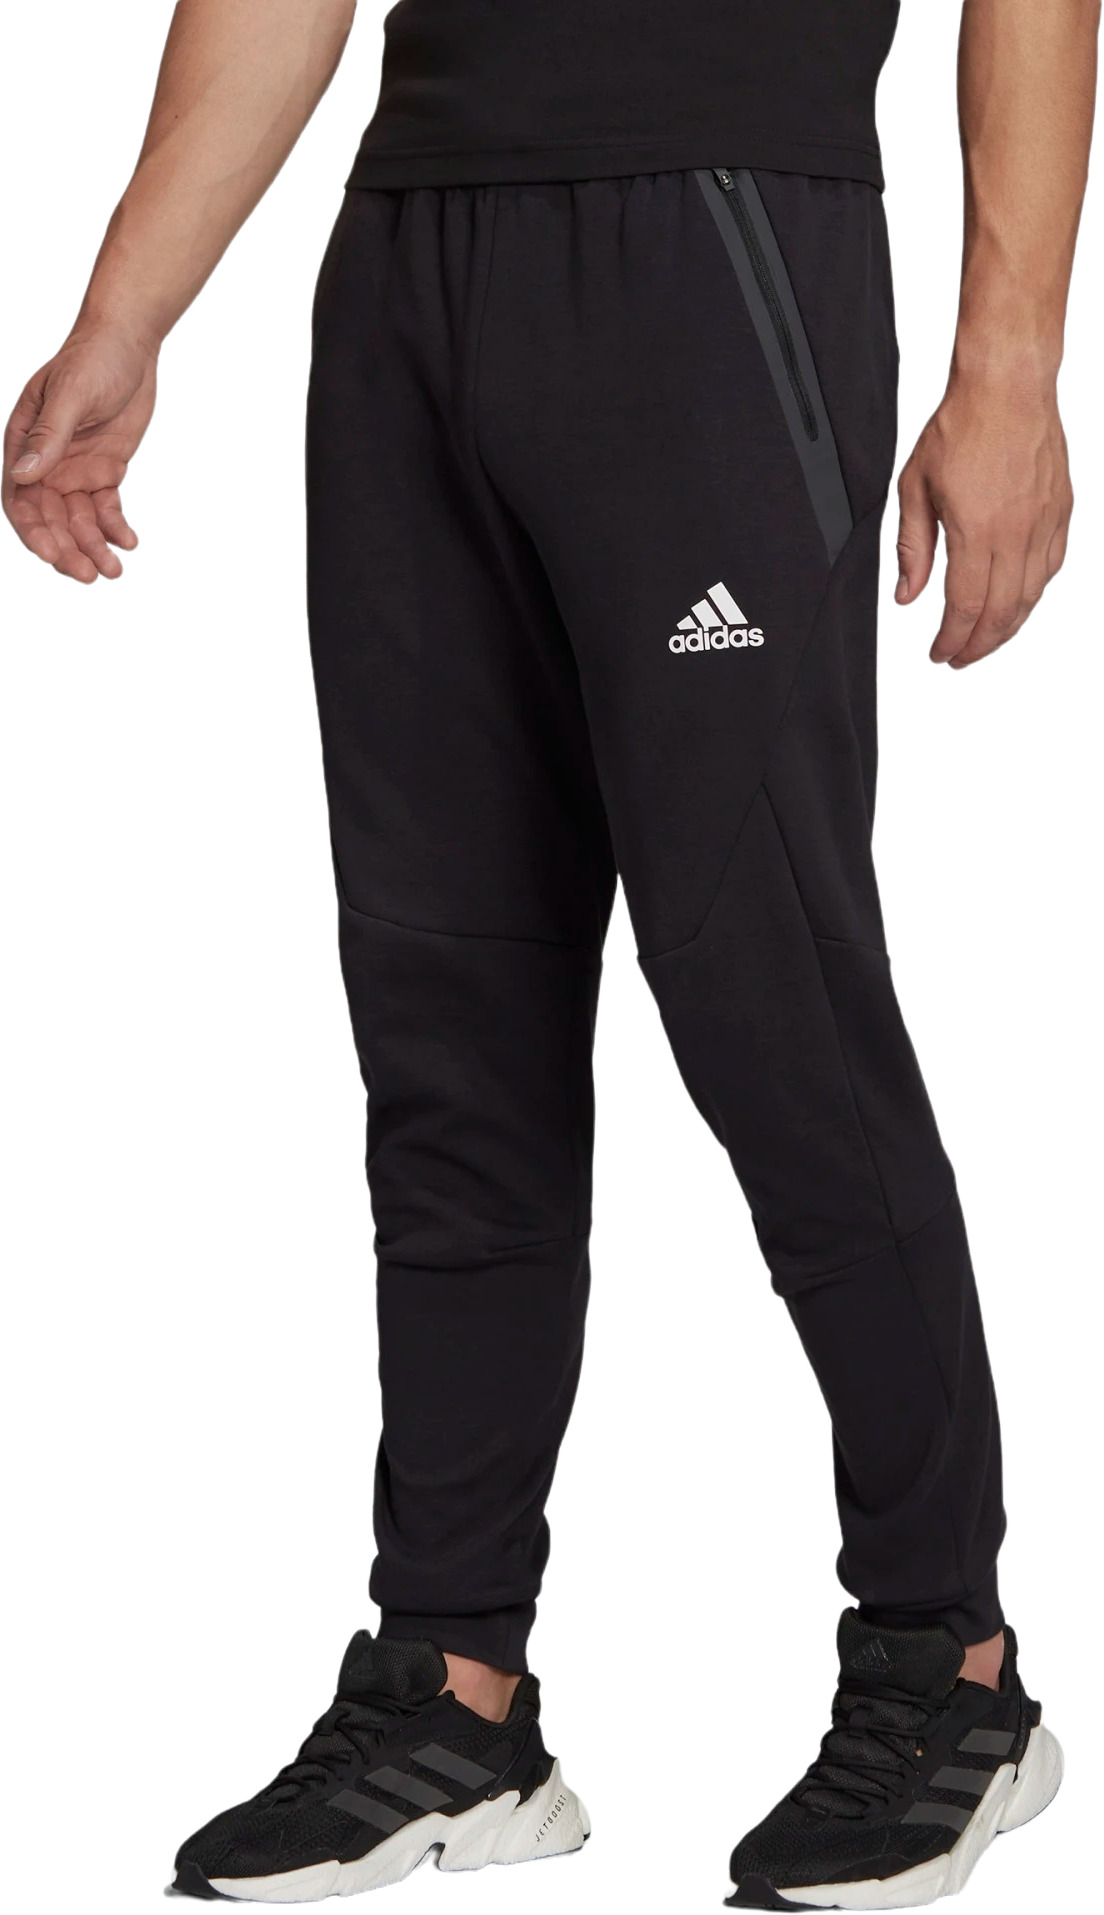 Спортивные брюки мужские Adidas HE5038 черные, спортивные брюки, черный, полиэстер  - купить